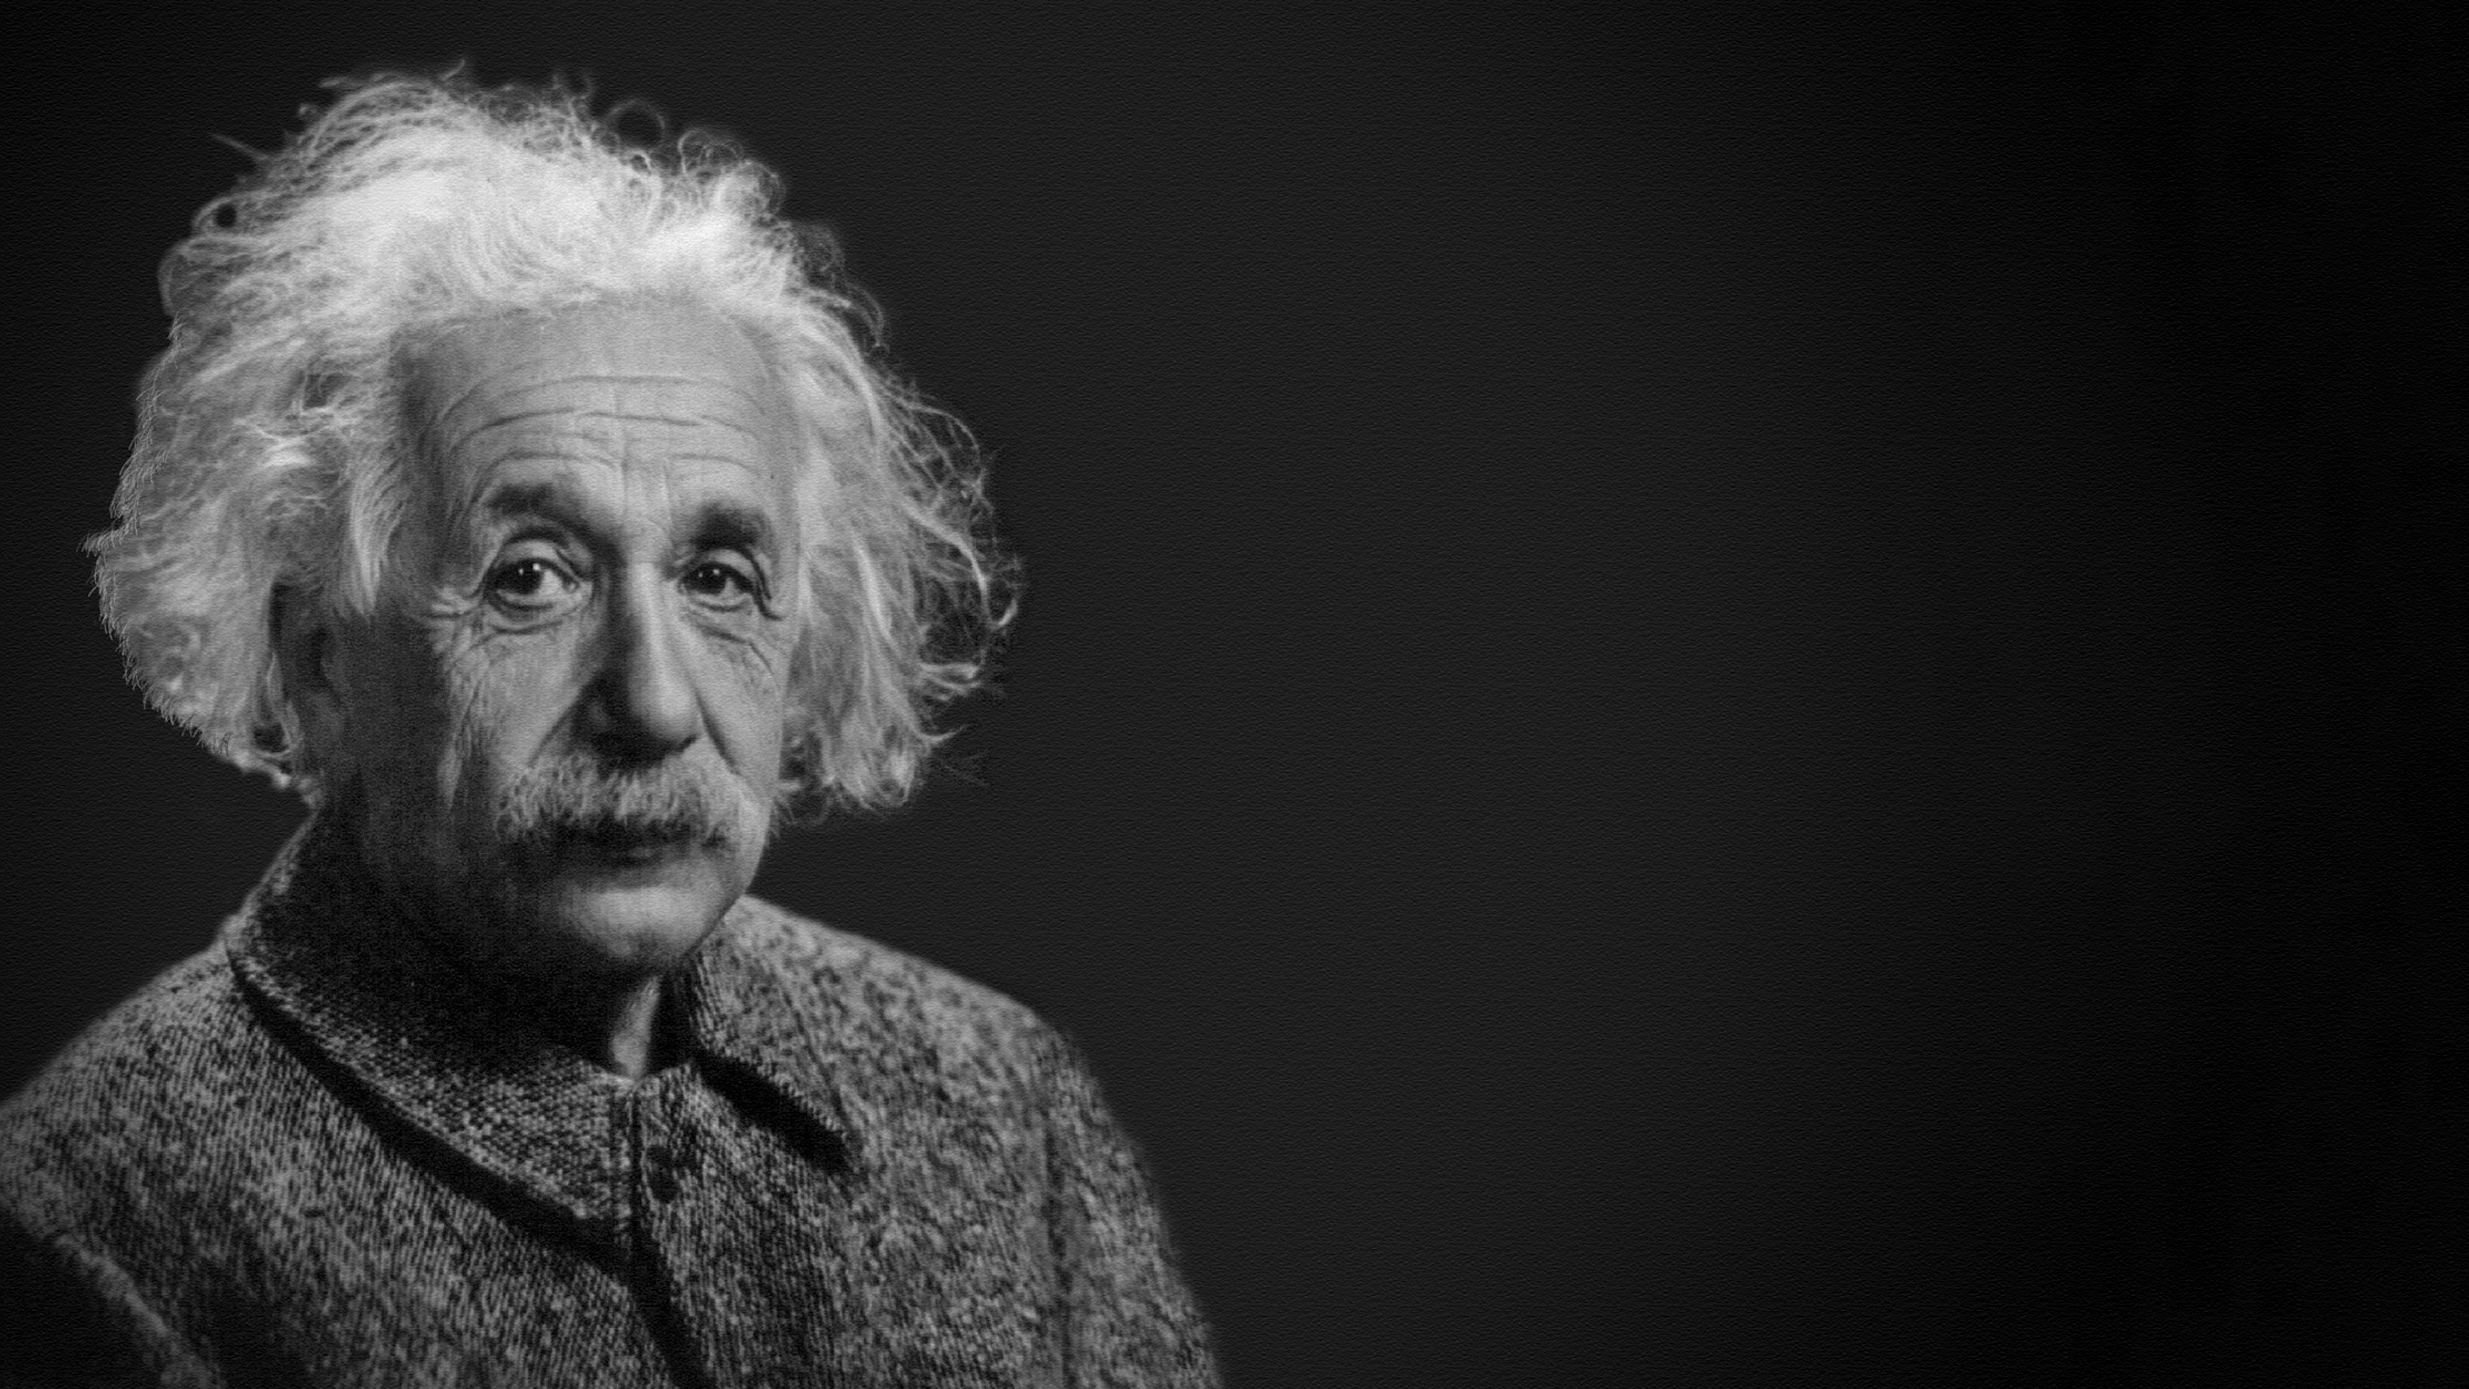 Albert Einstein in black and white